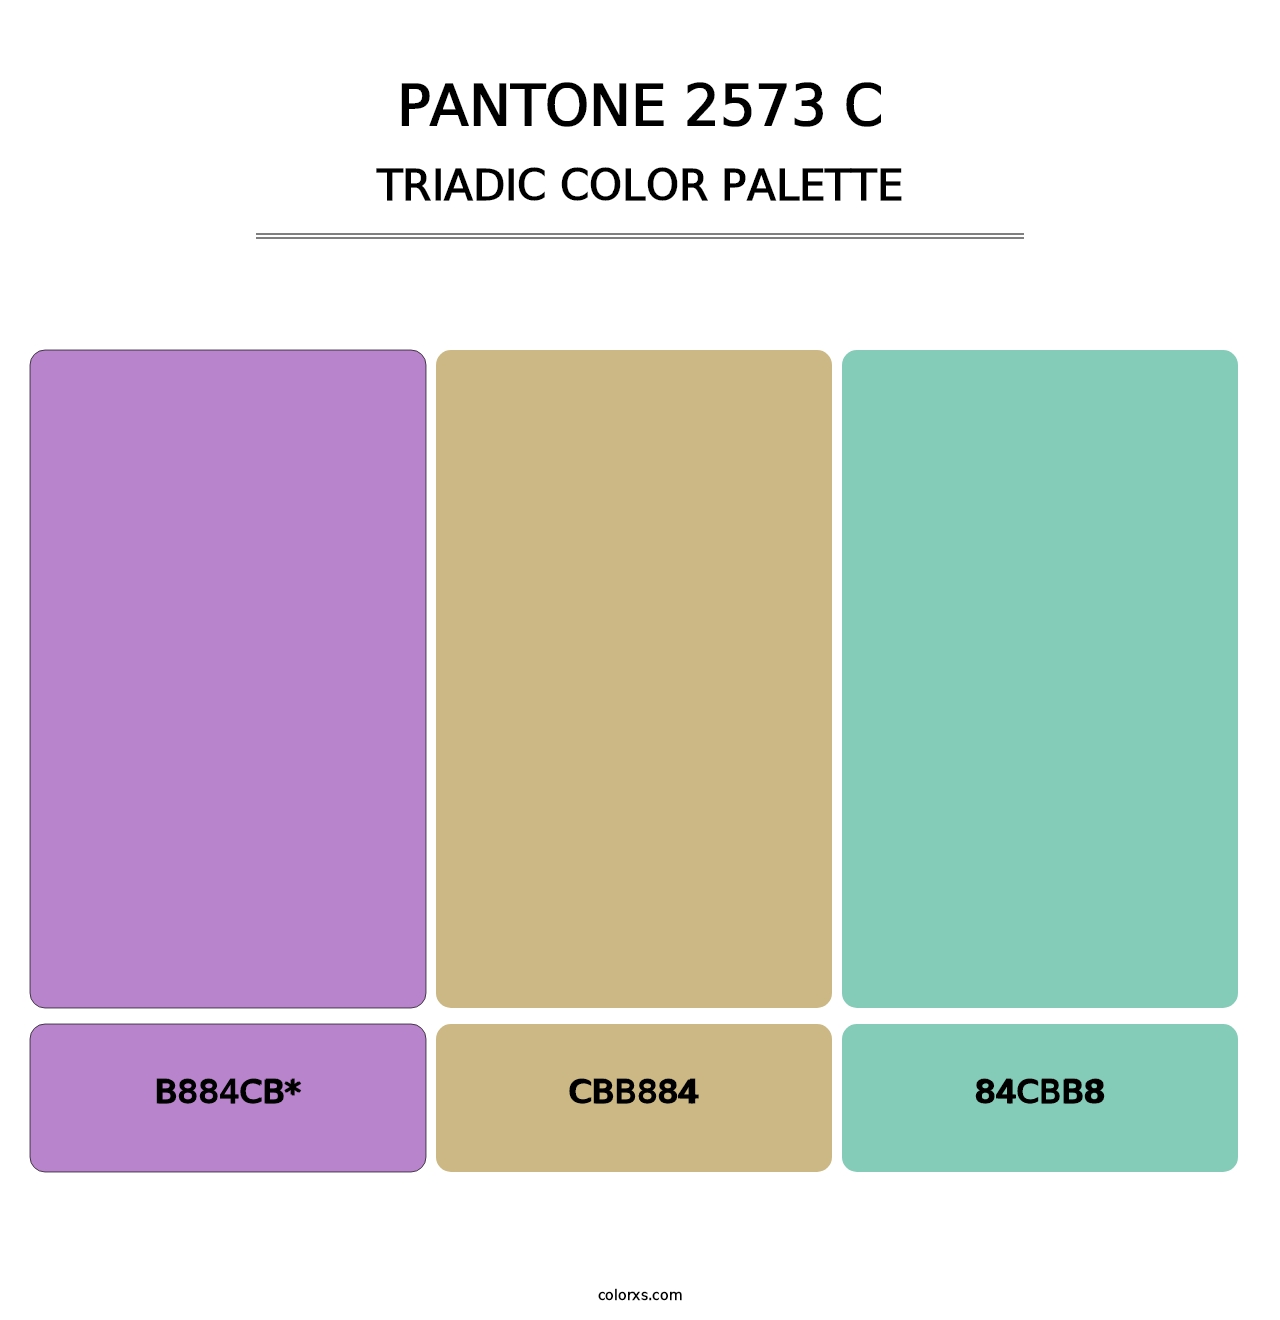 PANTONE 2573 C - Triadic Color Palette